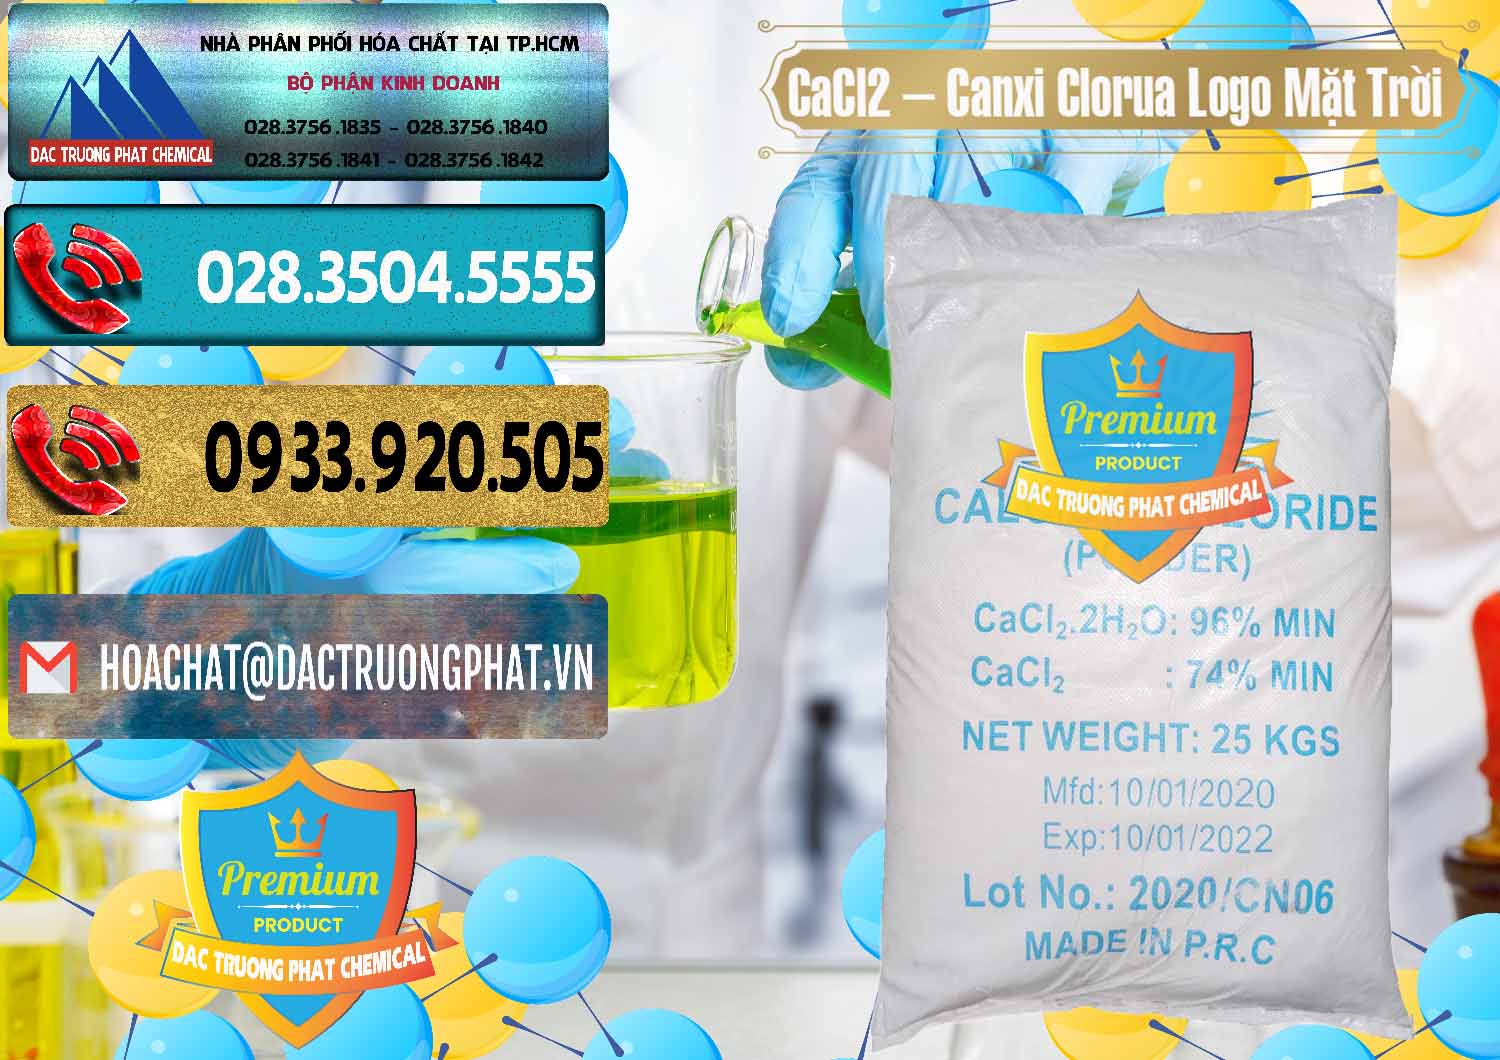 Cty chuyên bán ( cung cấp ) CaCl2 – Canxi Clorua 96% Logo Mặt Trời Trung Quốc China - 0041 - Nơi phân phối _ cung cấp hóa chất tại TP.HCM - hoachatdetnhuom.com